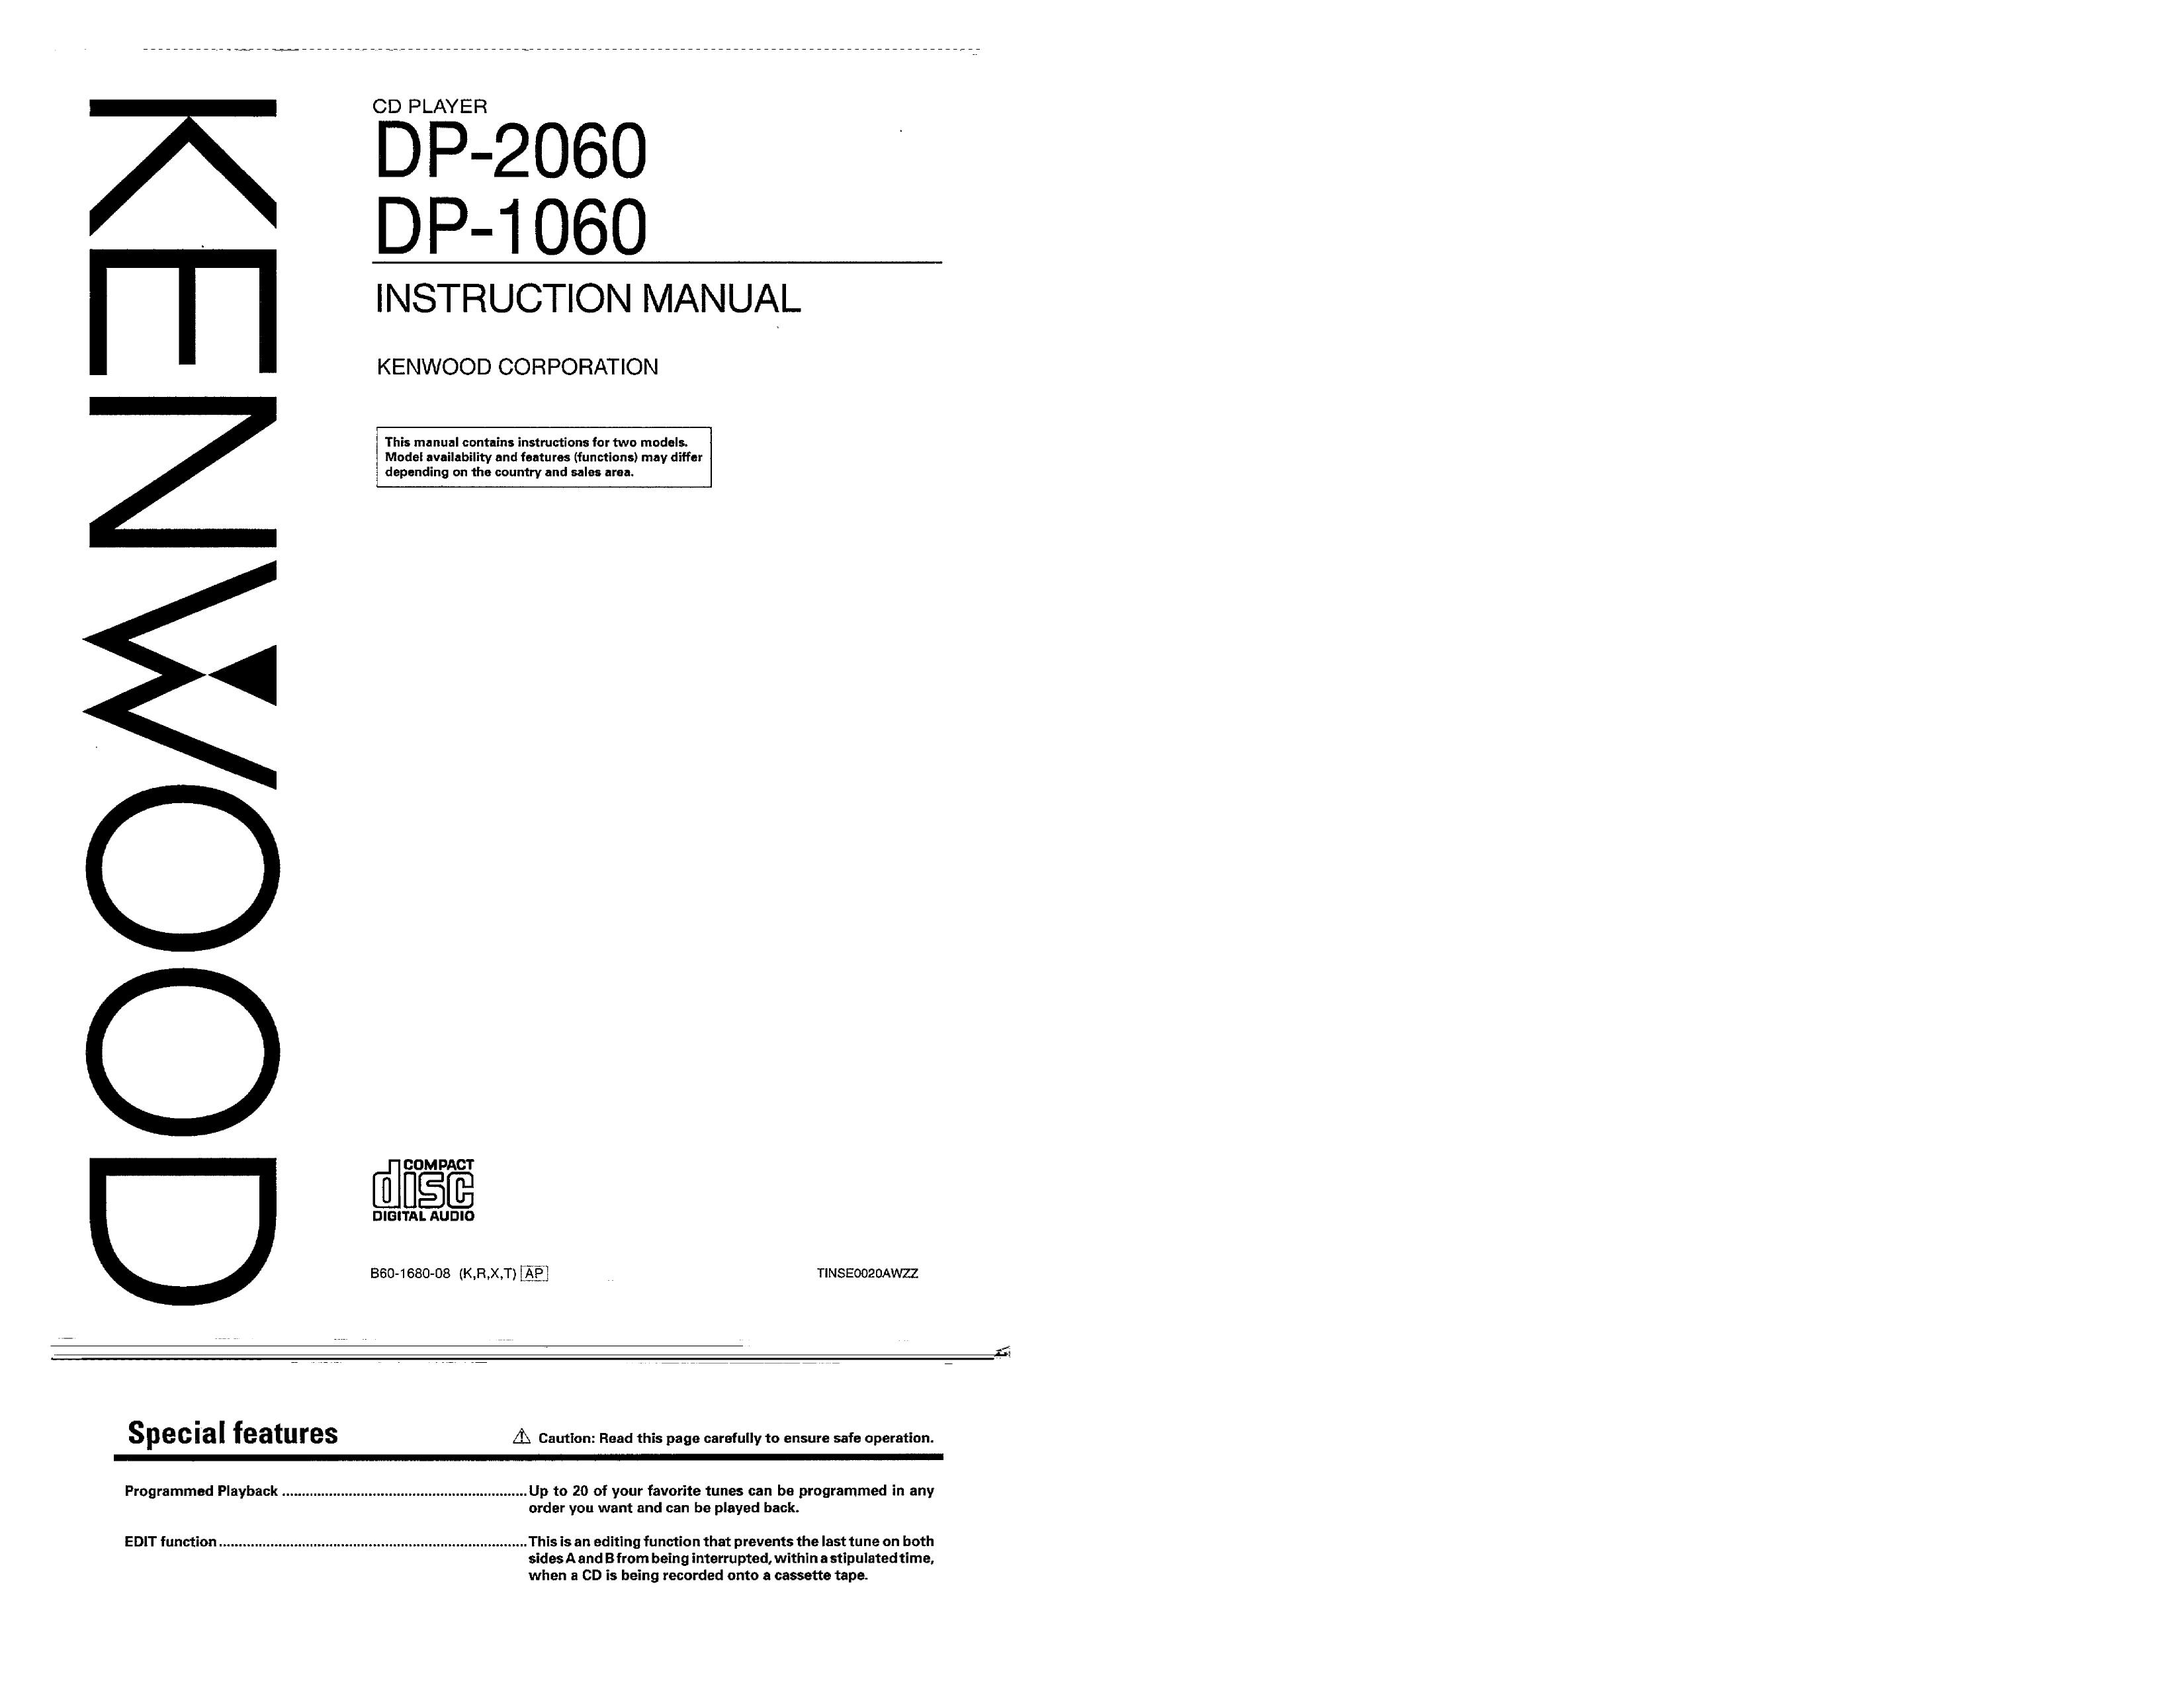 Kenwood DP-2060 Digital Camera User Manual